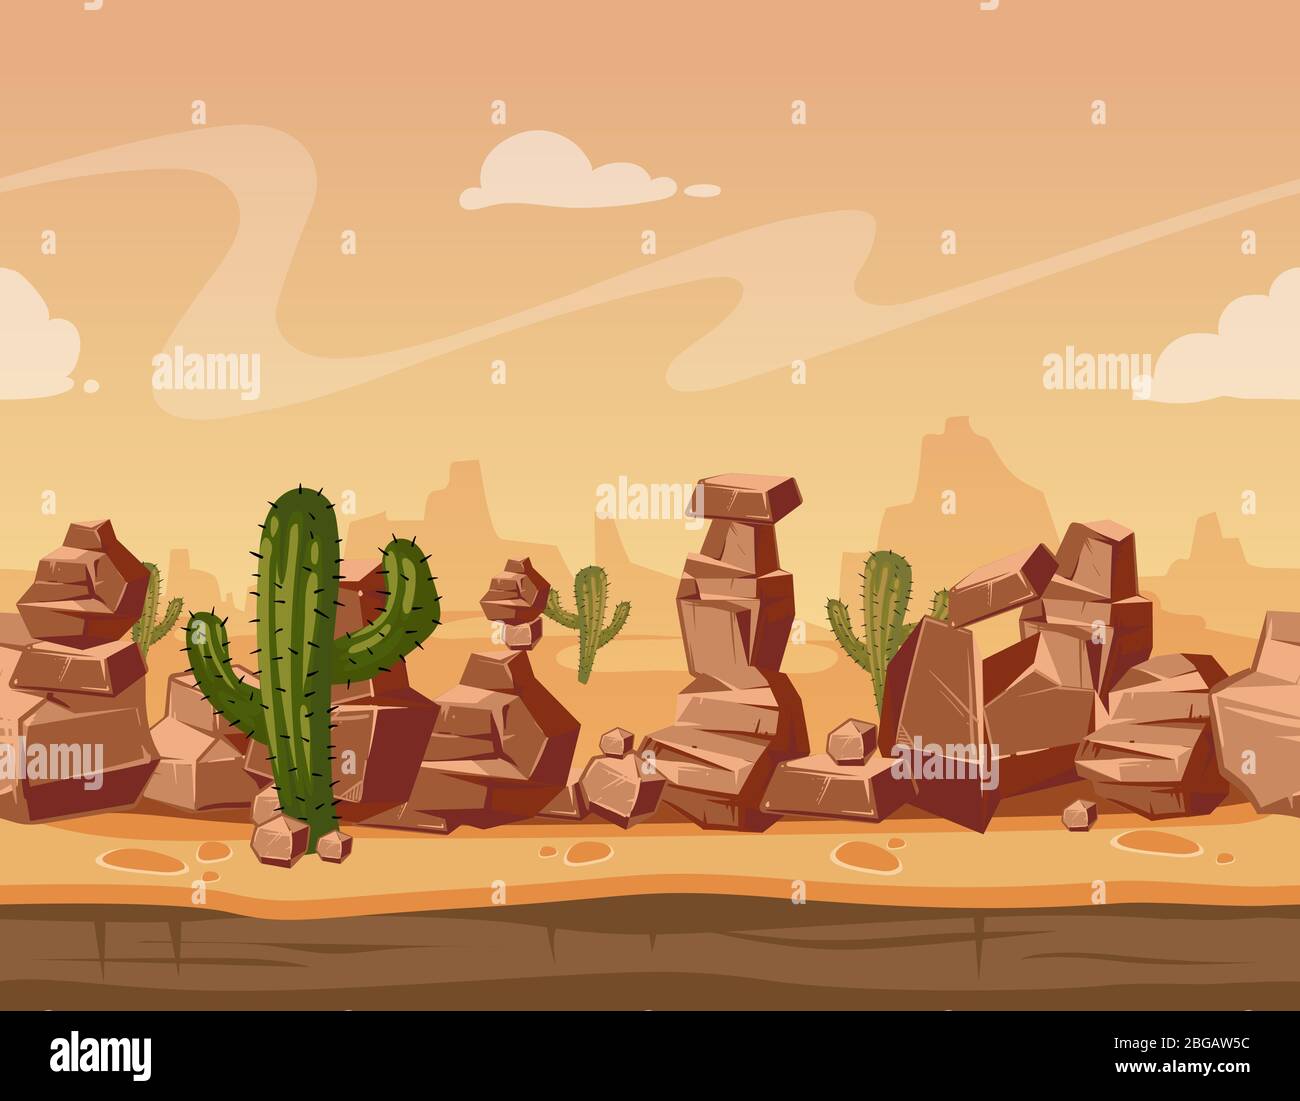 Vecteur cartoon paysage sans couture avec des pierres et cactus. Illustration d'arrière-plan sauvage du jeu Illustration de Vecteur